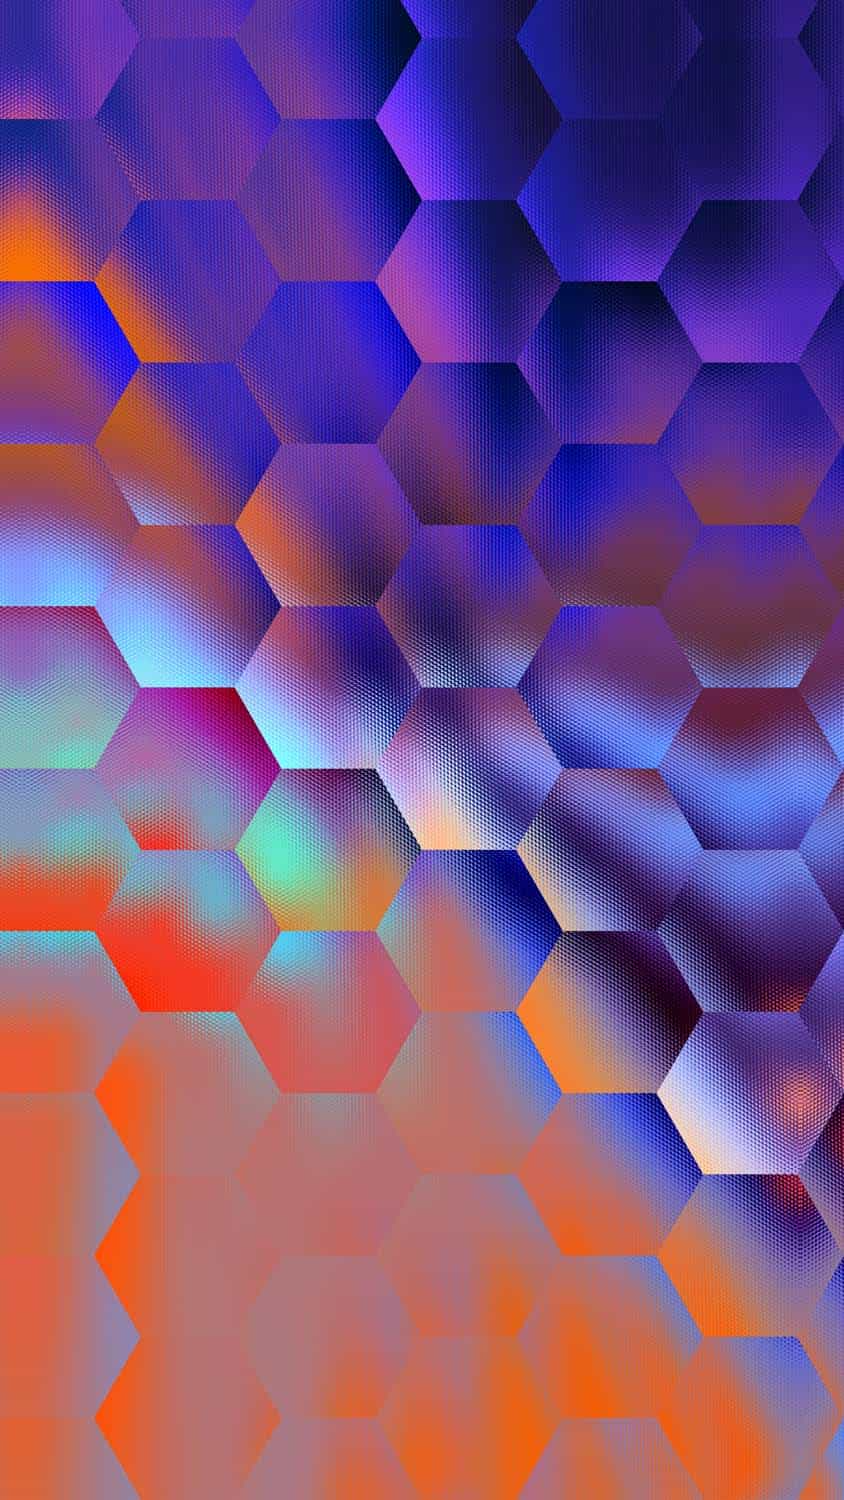 3D Glass Hexagonal IPhone Wallpaper HD  IPhone Wallpapers